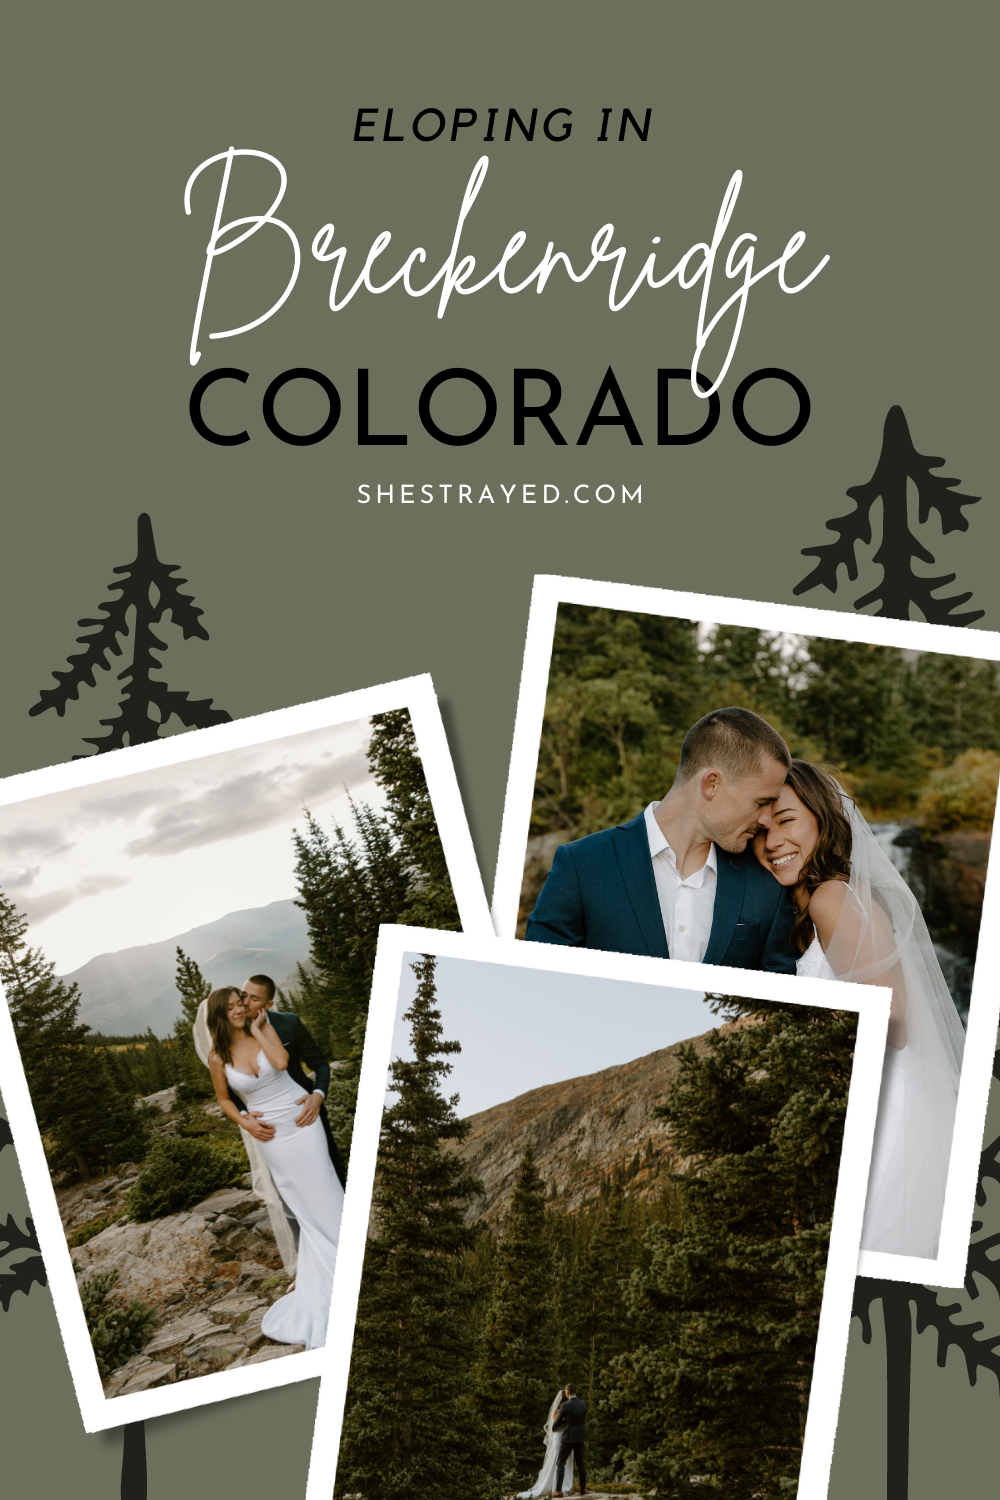 Eloped in Breckenridge Colorado